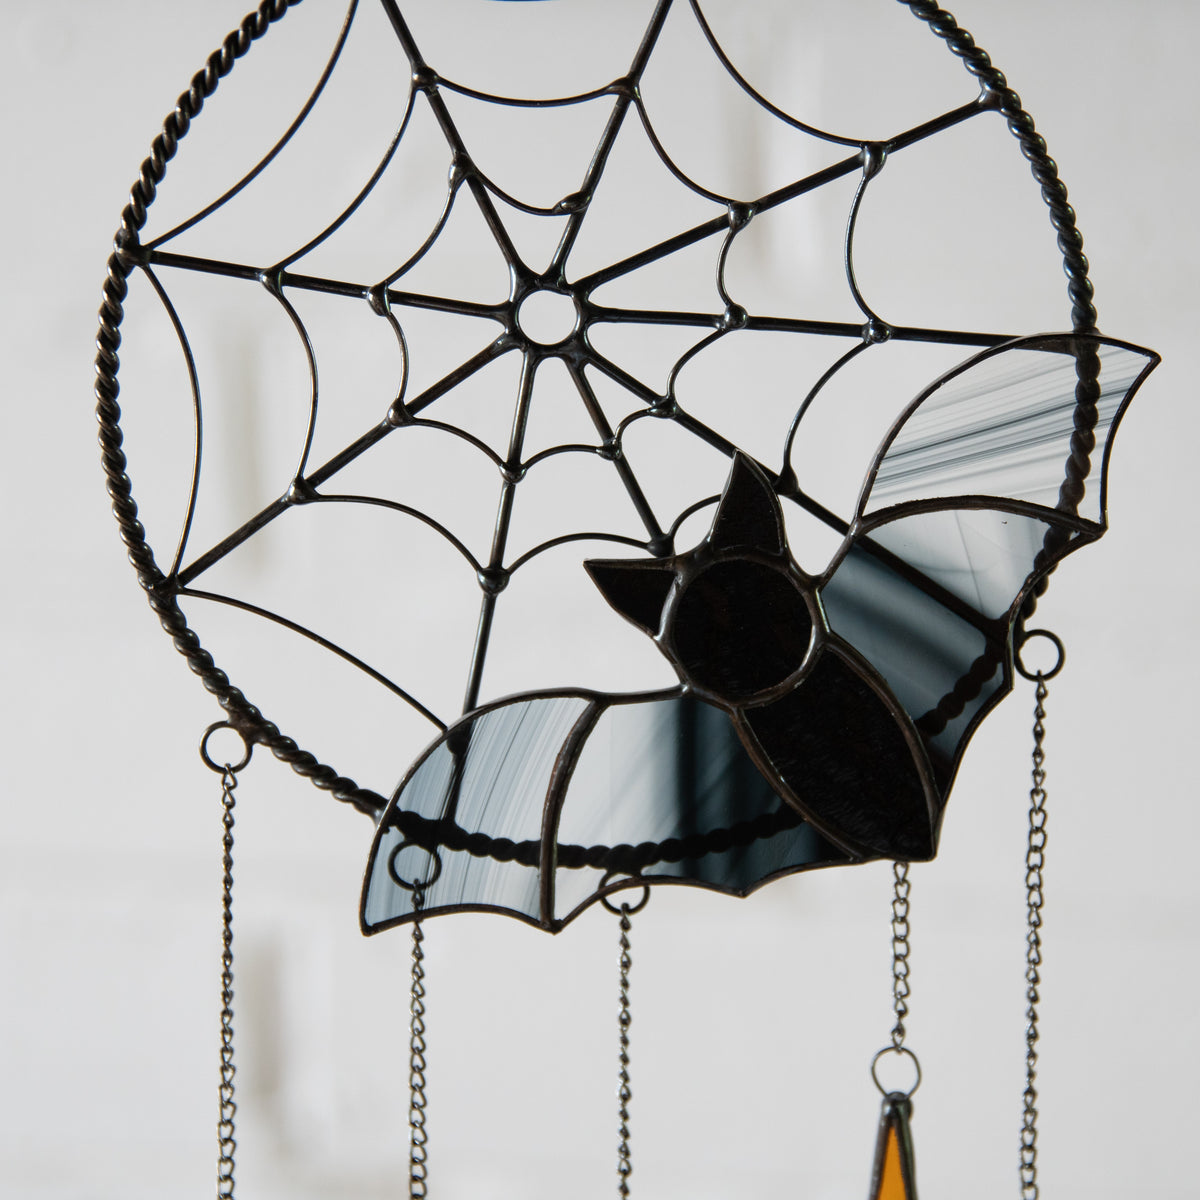 Stained glass black bat in spider web Halloween dreamcatcher